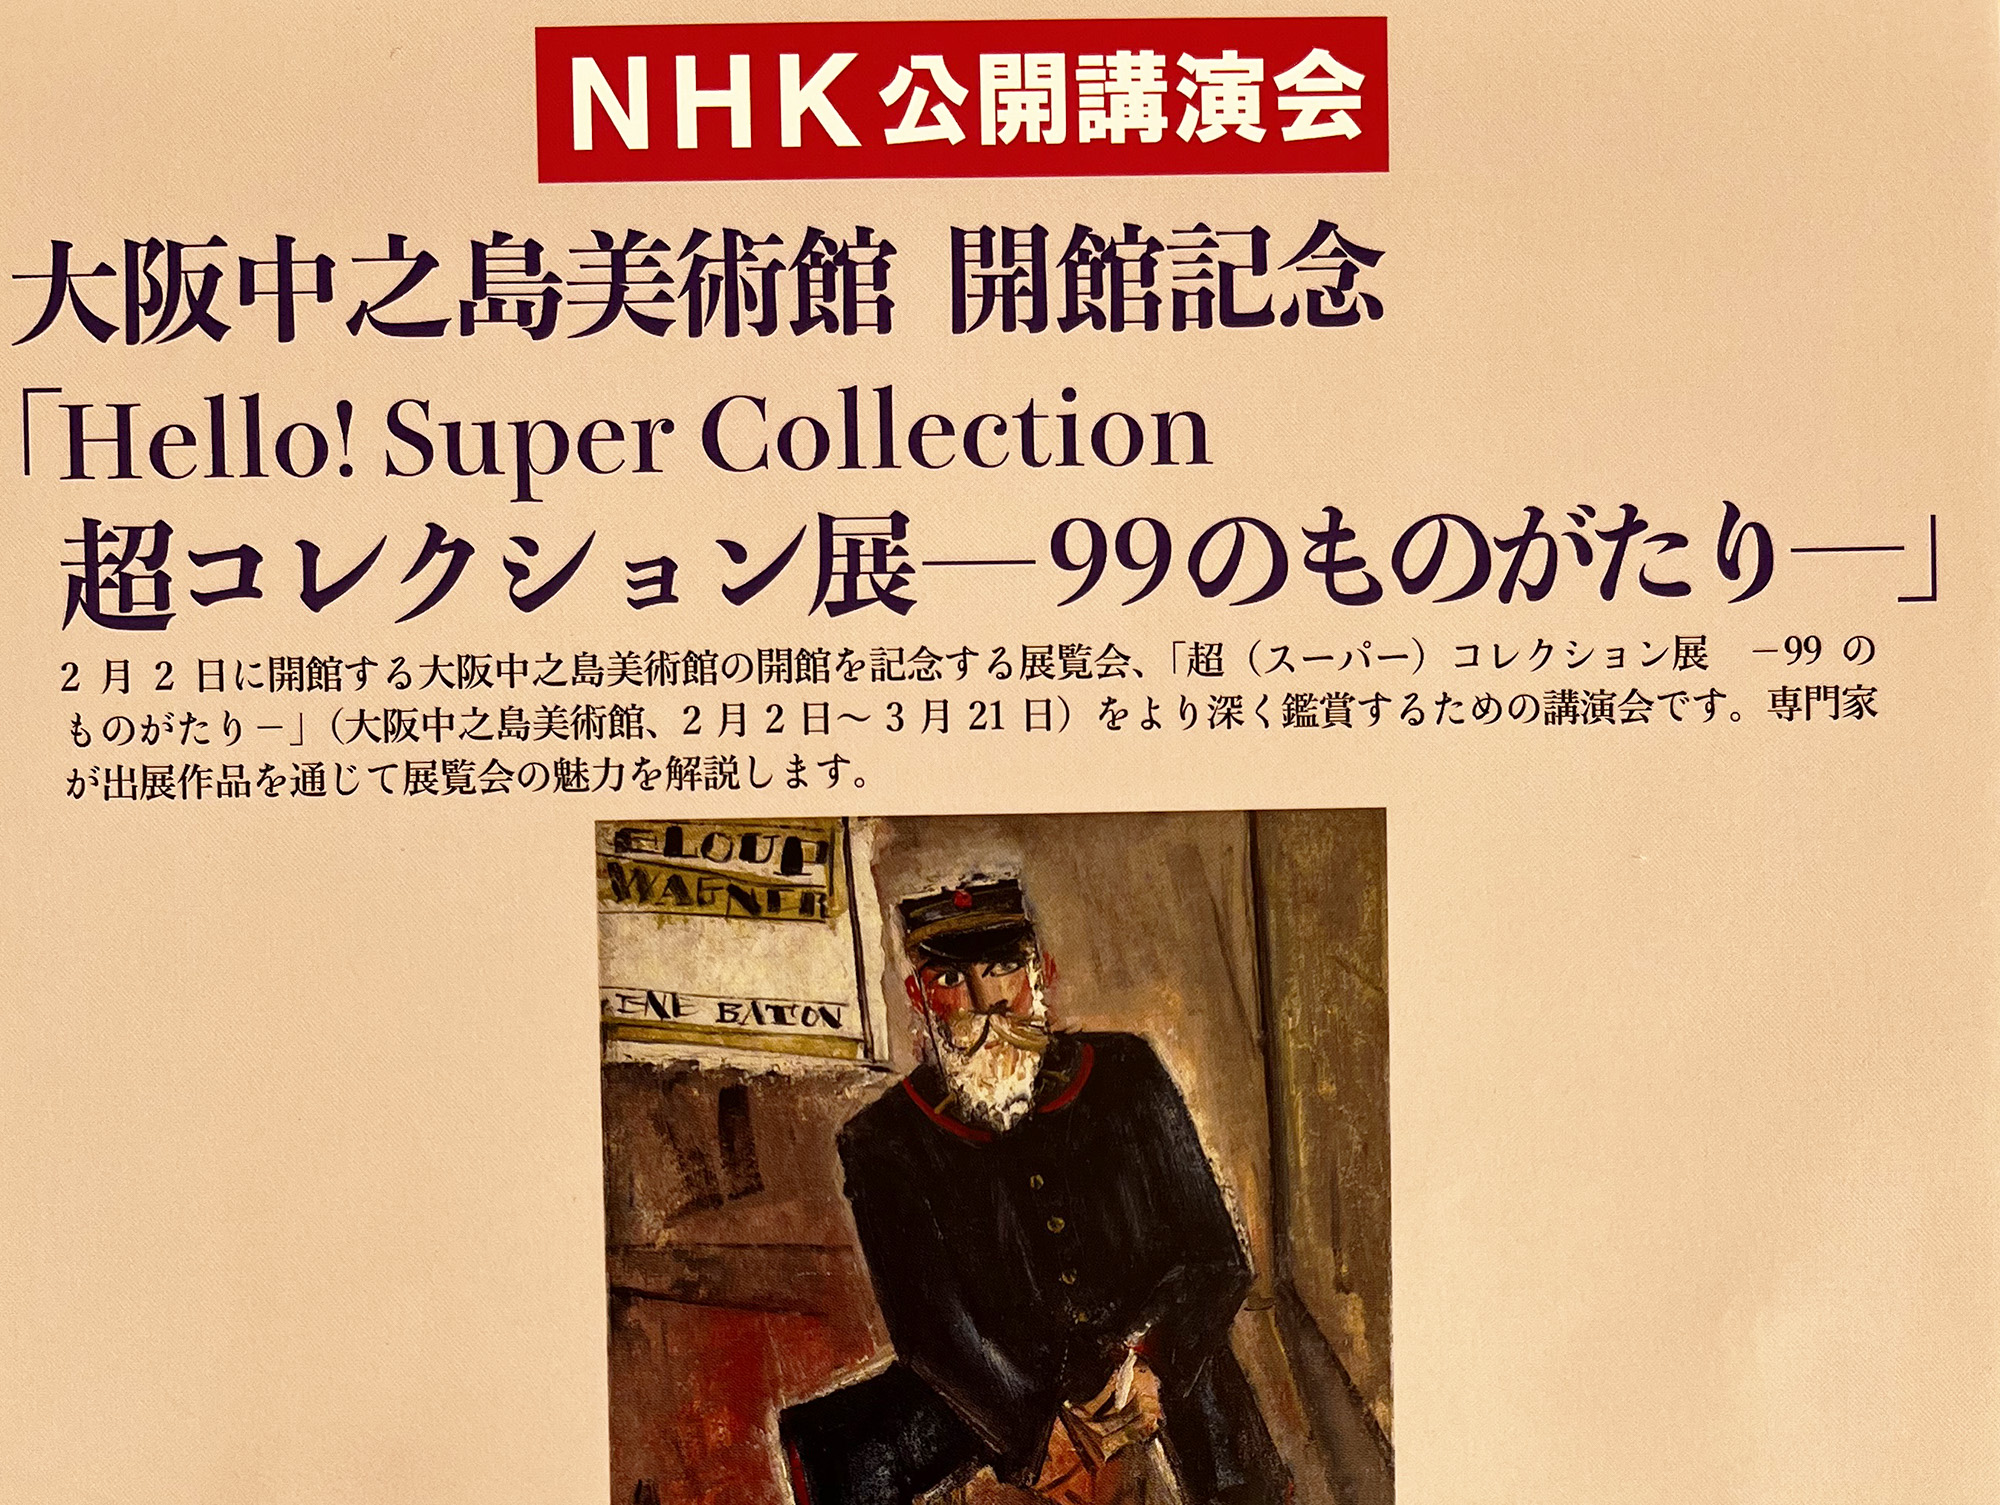 2022年2月7日 hello! Super Collection 超コレクション展<br>ー99のものがたりー